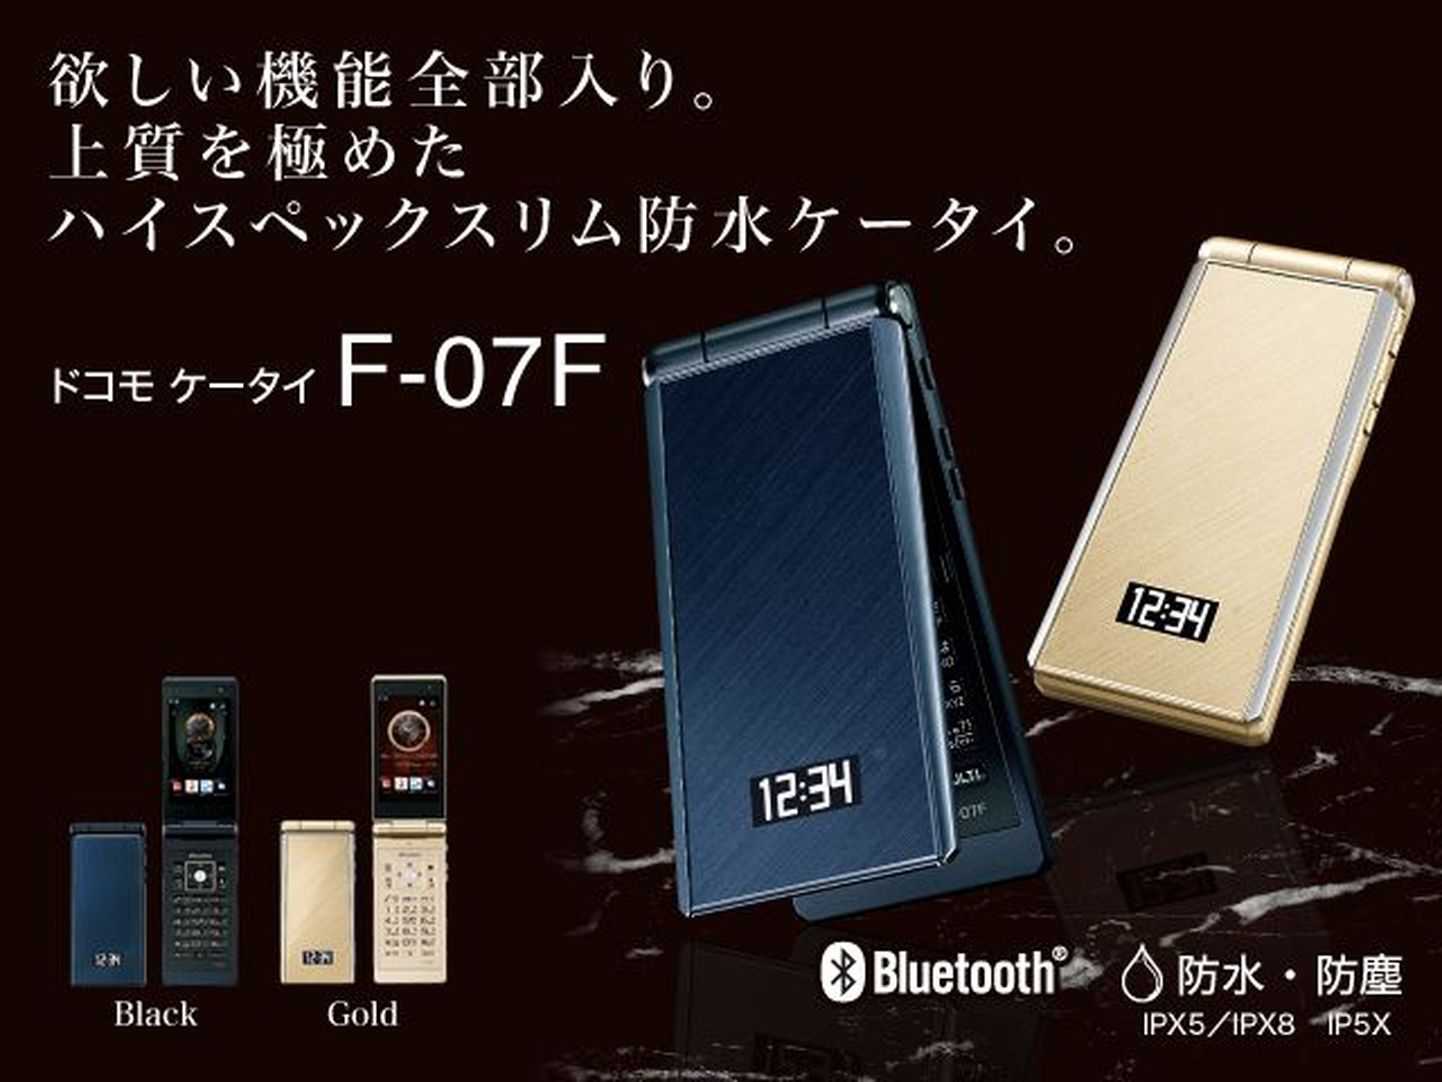 Fujitsu F-07F klapitelefon